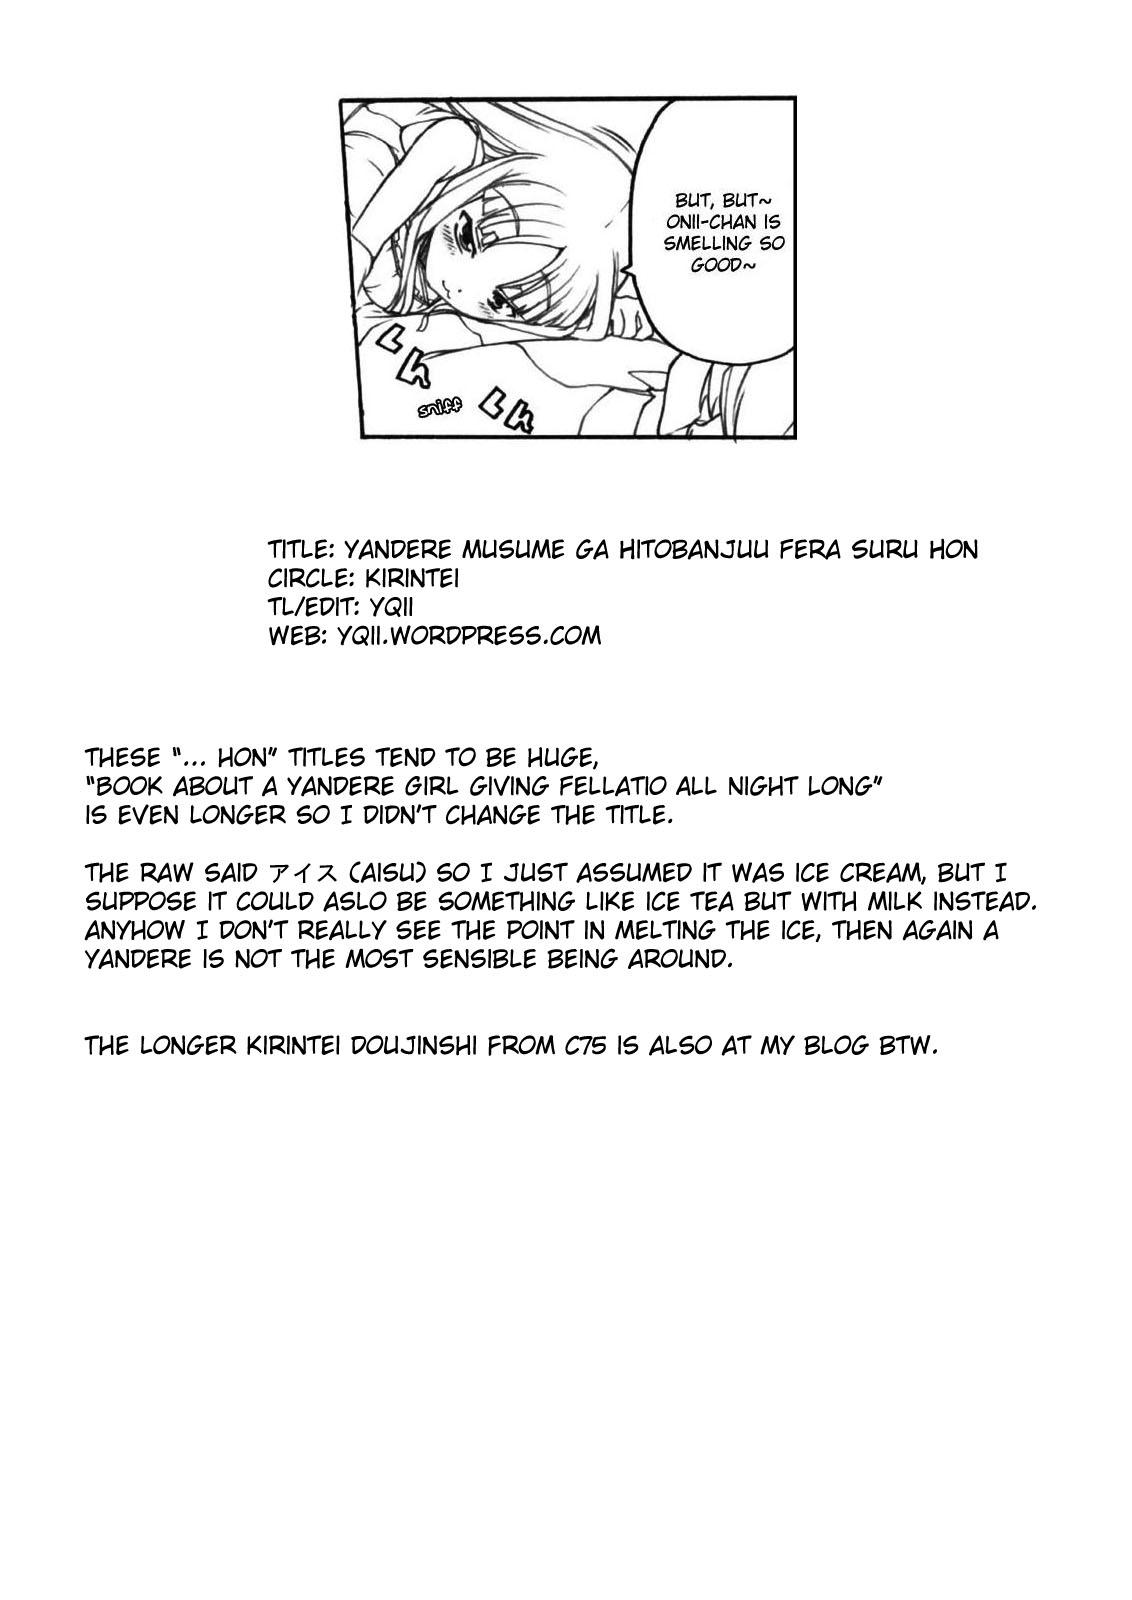 Buttfucking Yandere Musume ga Hitobanjuu Fella Suru Hon Star - Page 13